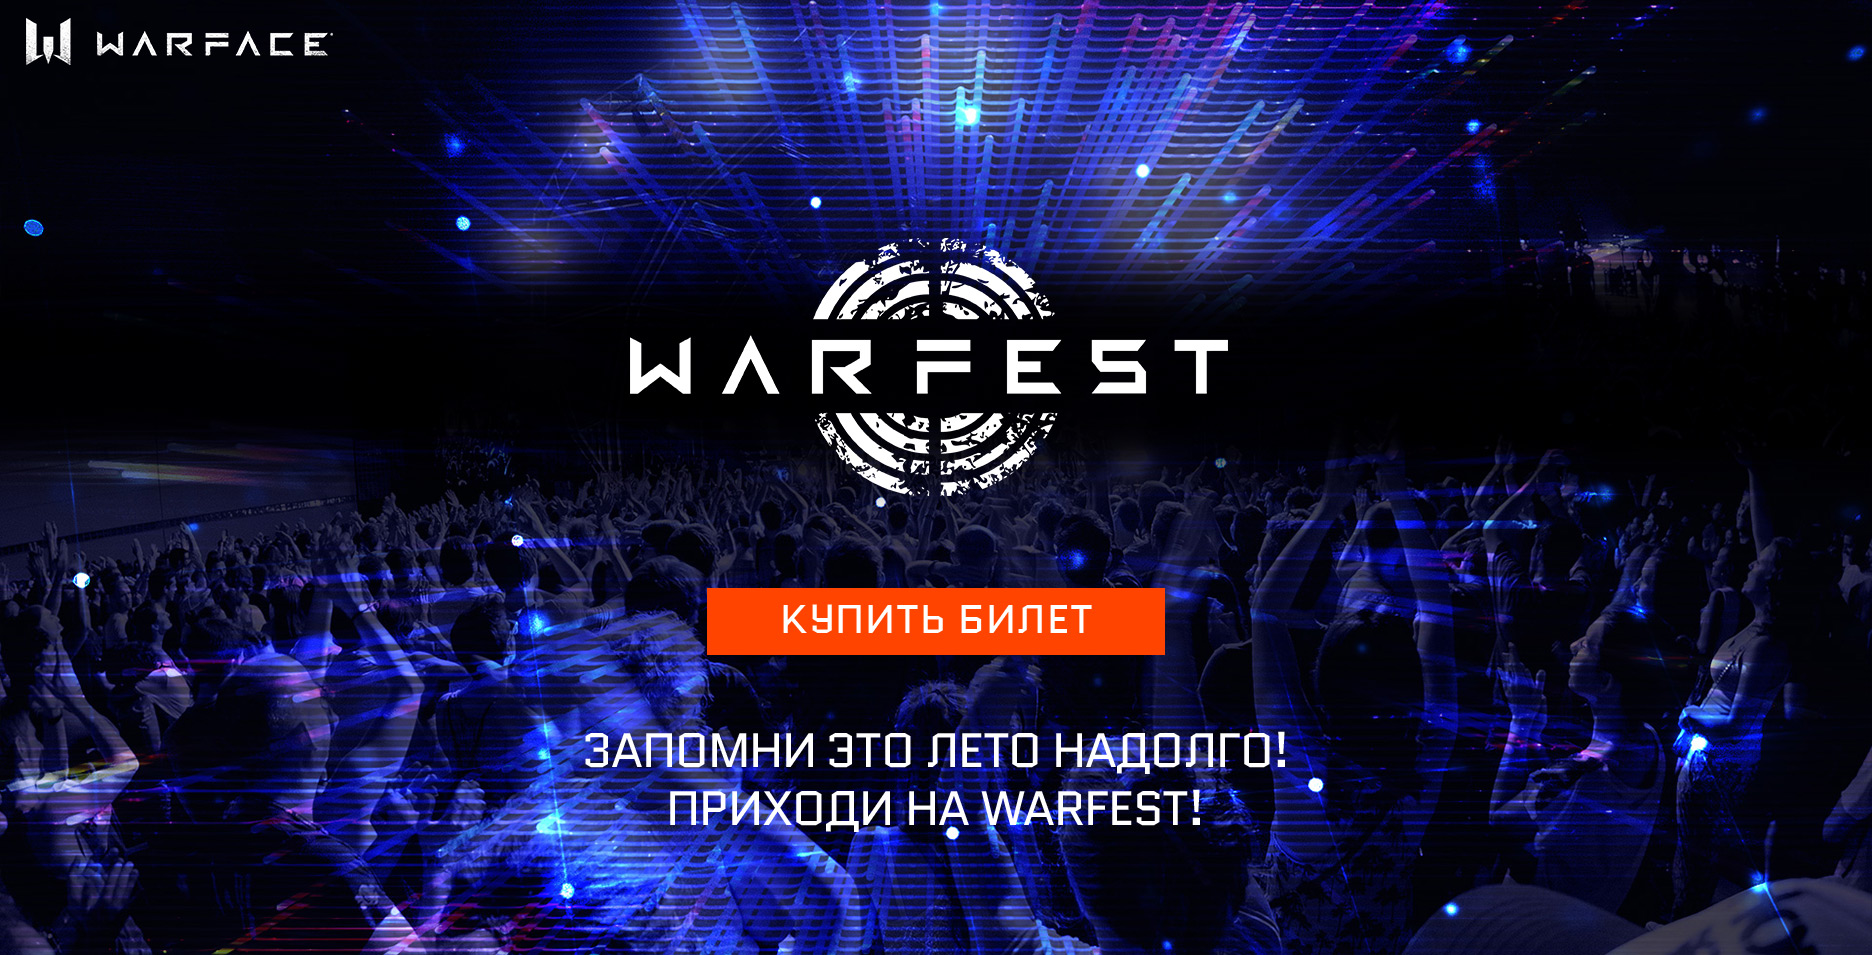 Подробности WARFEST: дата проведения и цена билетов